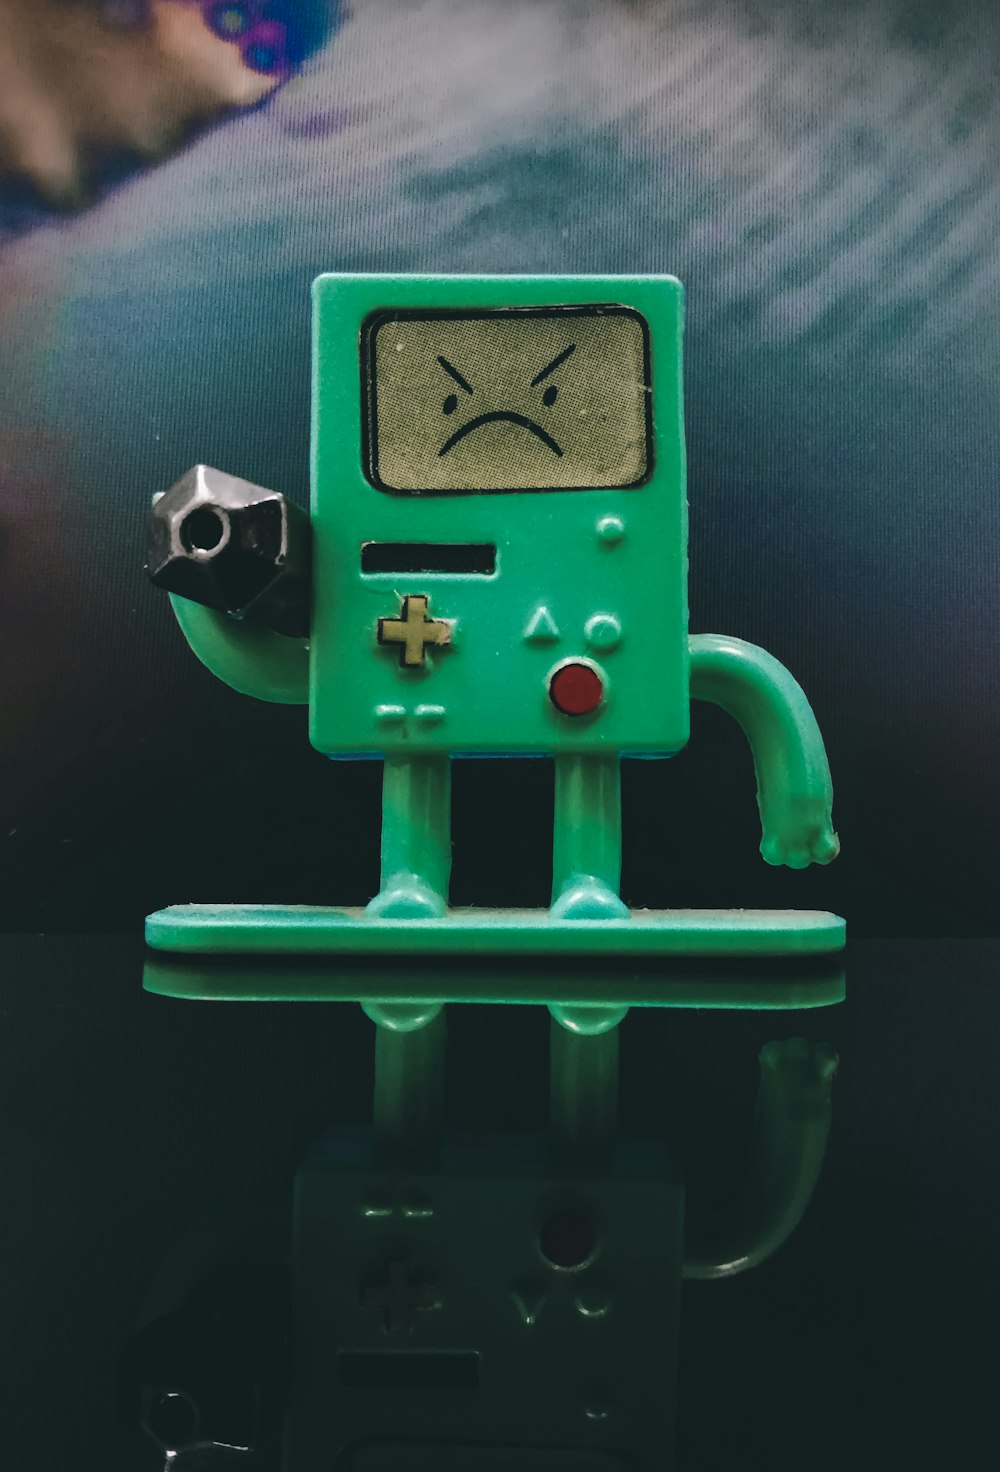 juguete robot verde y negro